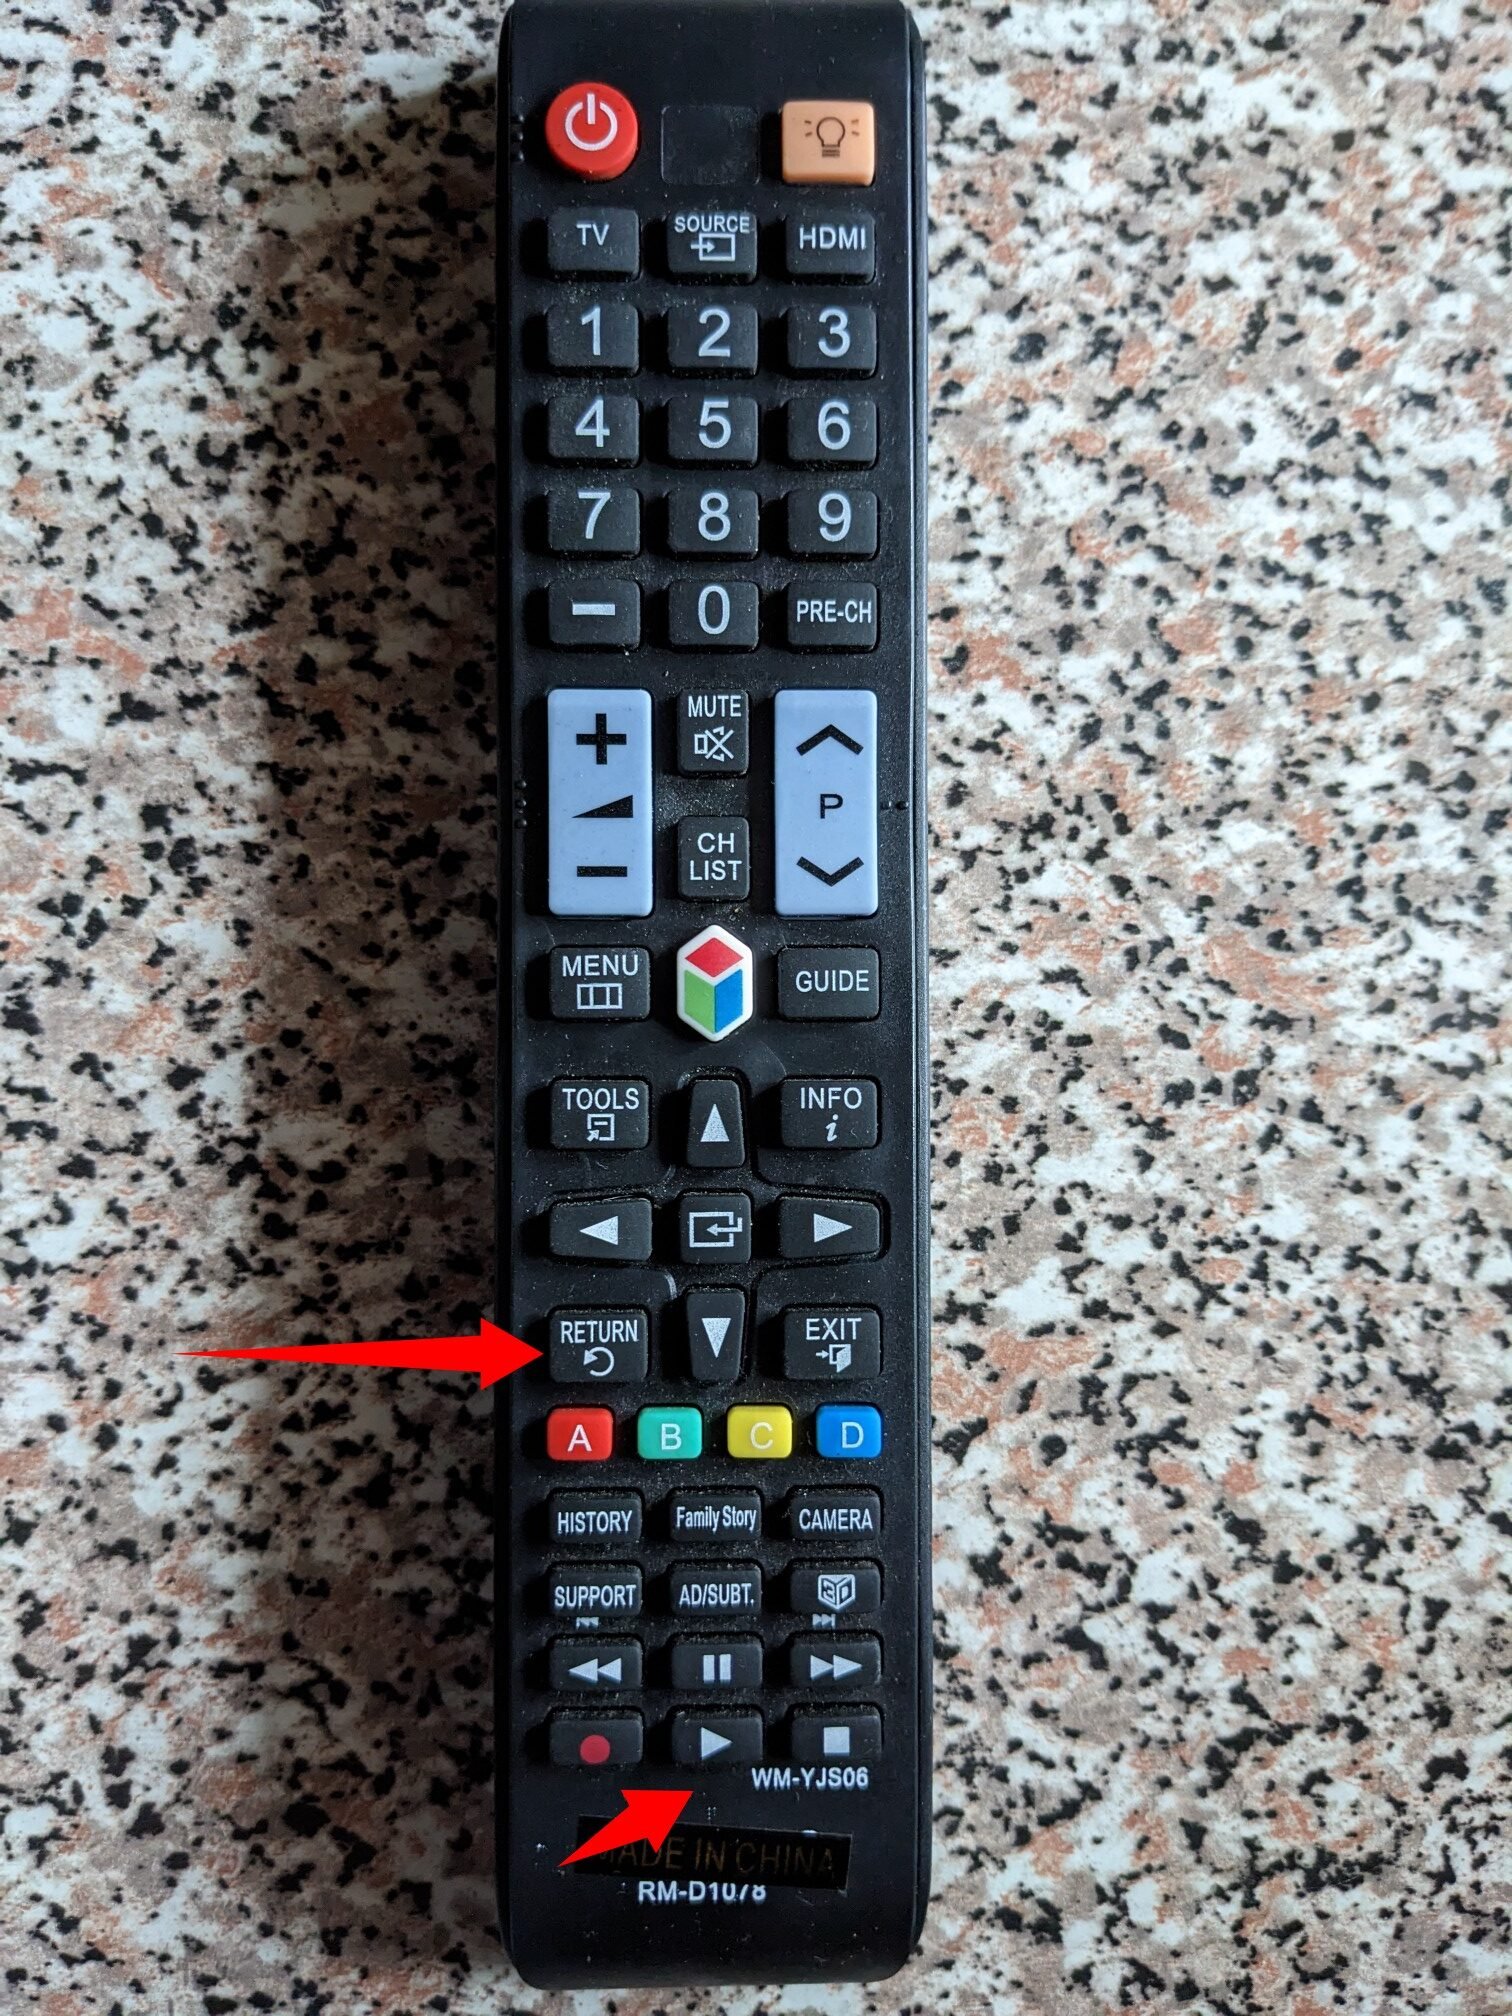 Samsung smart TV remote return button 